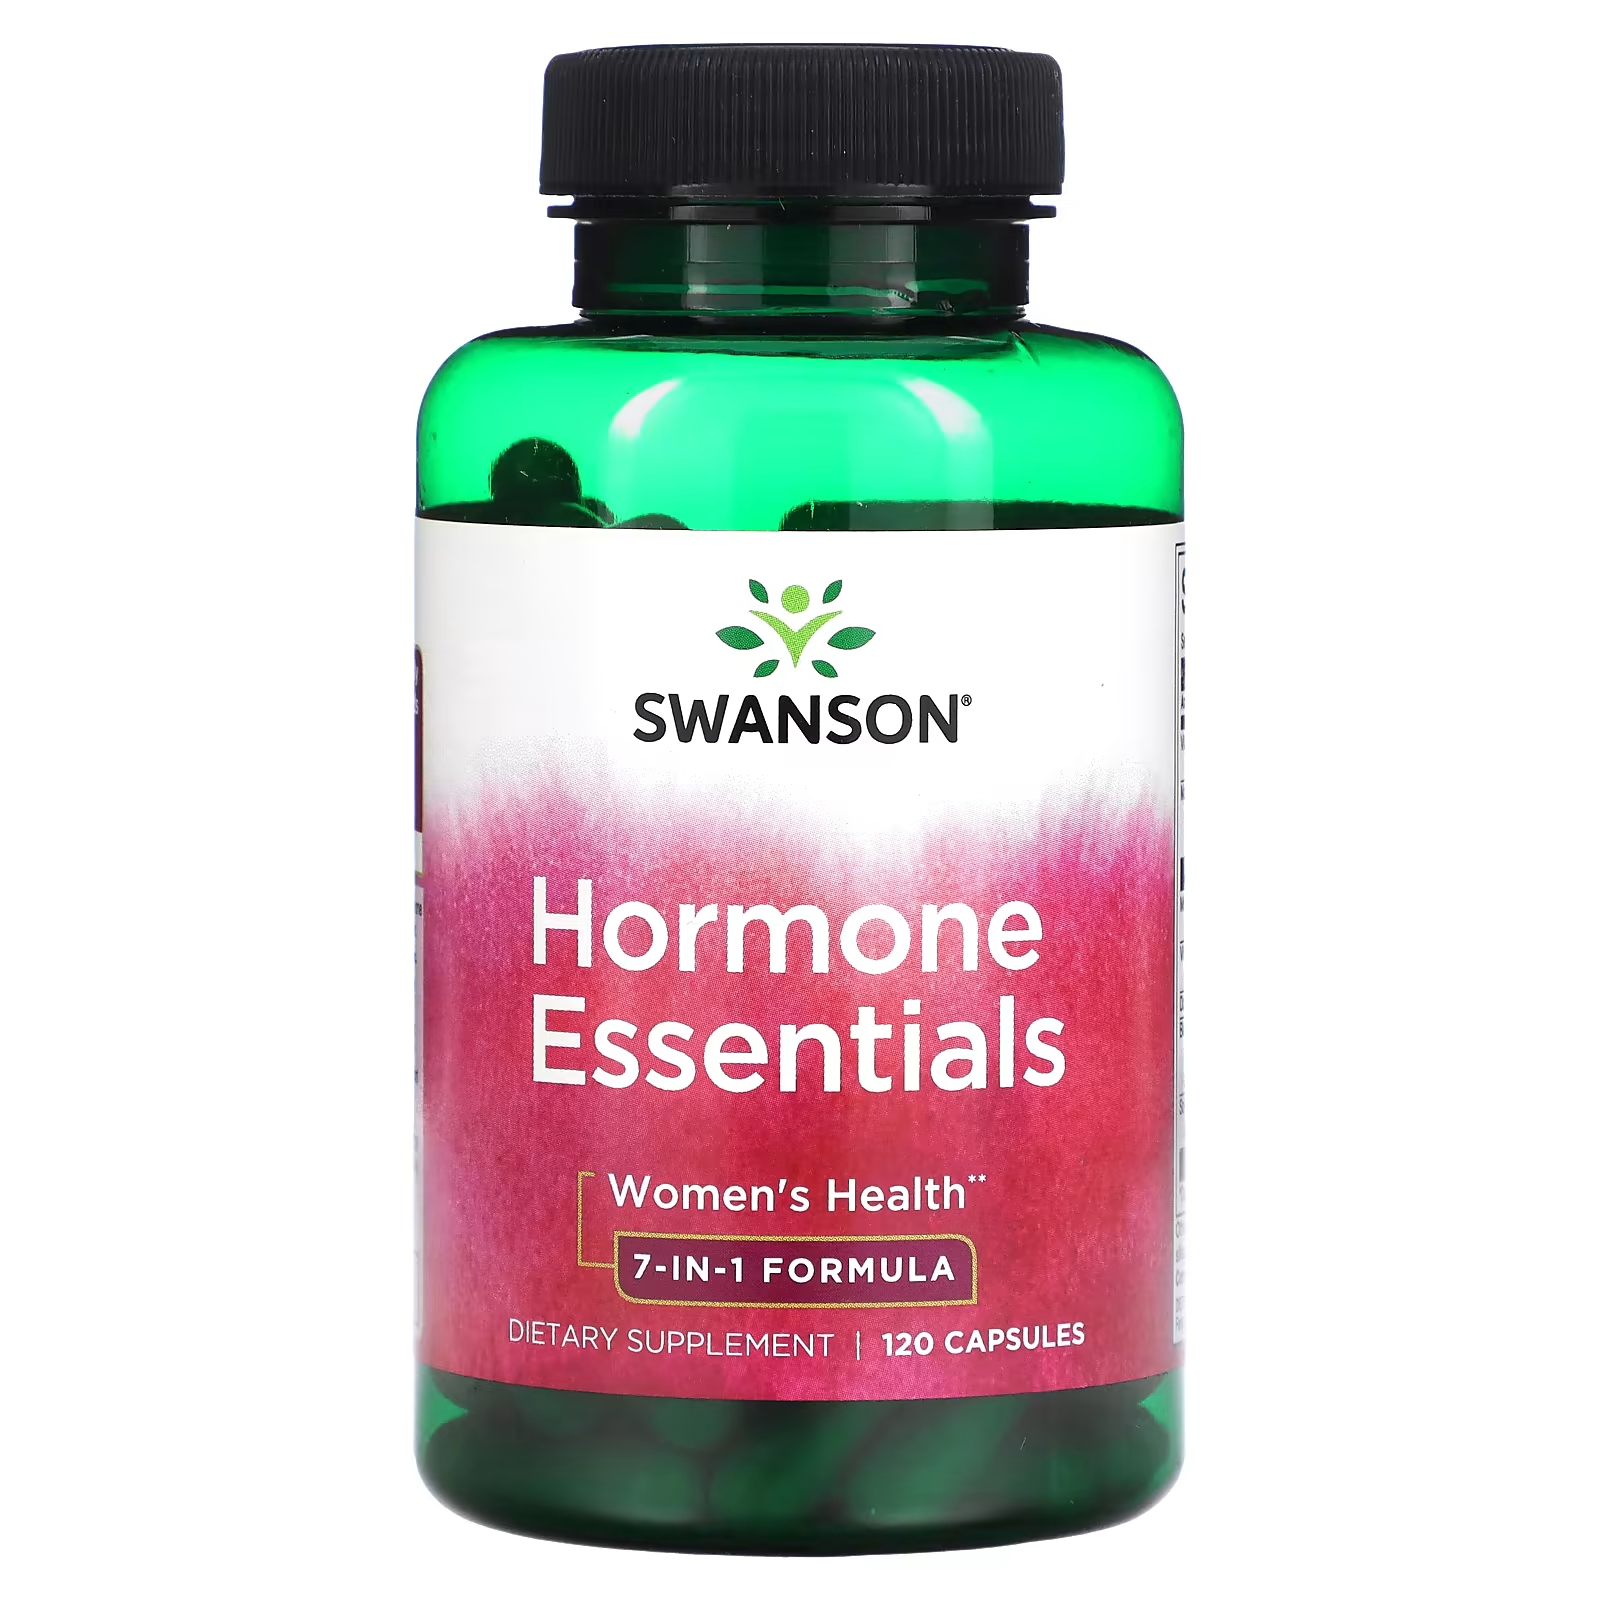 Витамины для женщин Swanson Hormone Essentials женское здоровье, 120 капсул витамины для женщин swanson hormone essentials женское здоровье 120 капсул